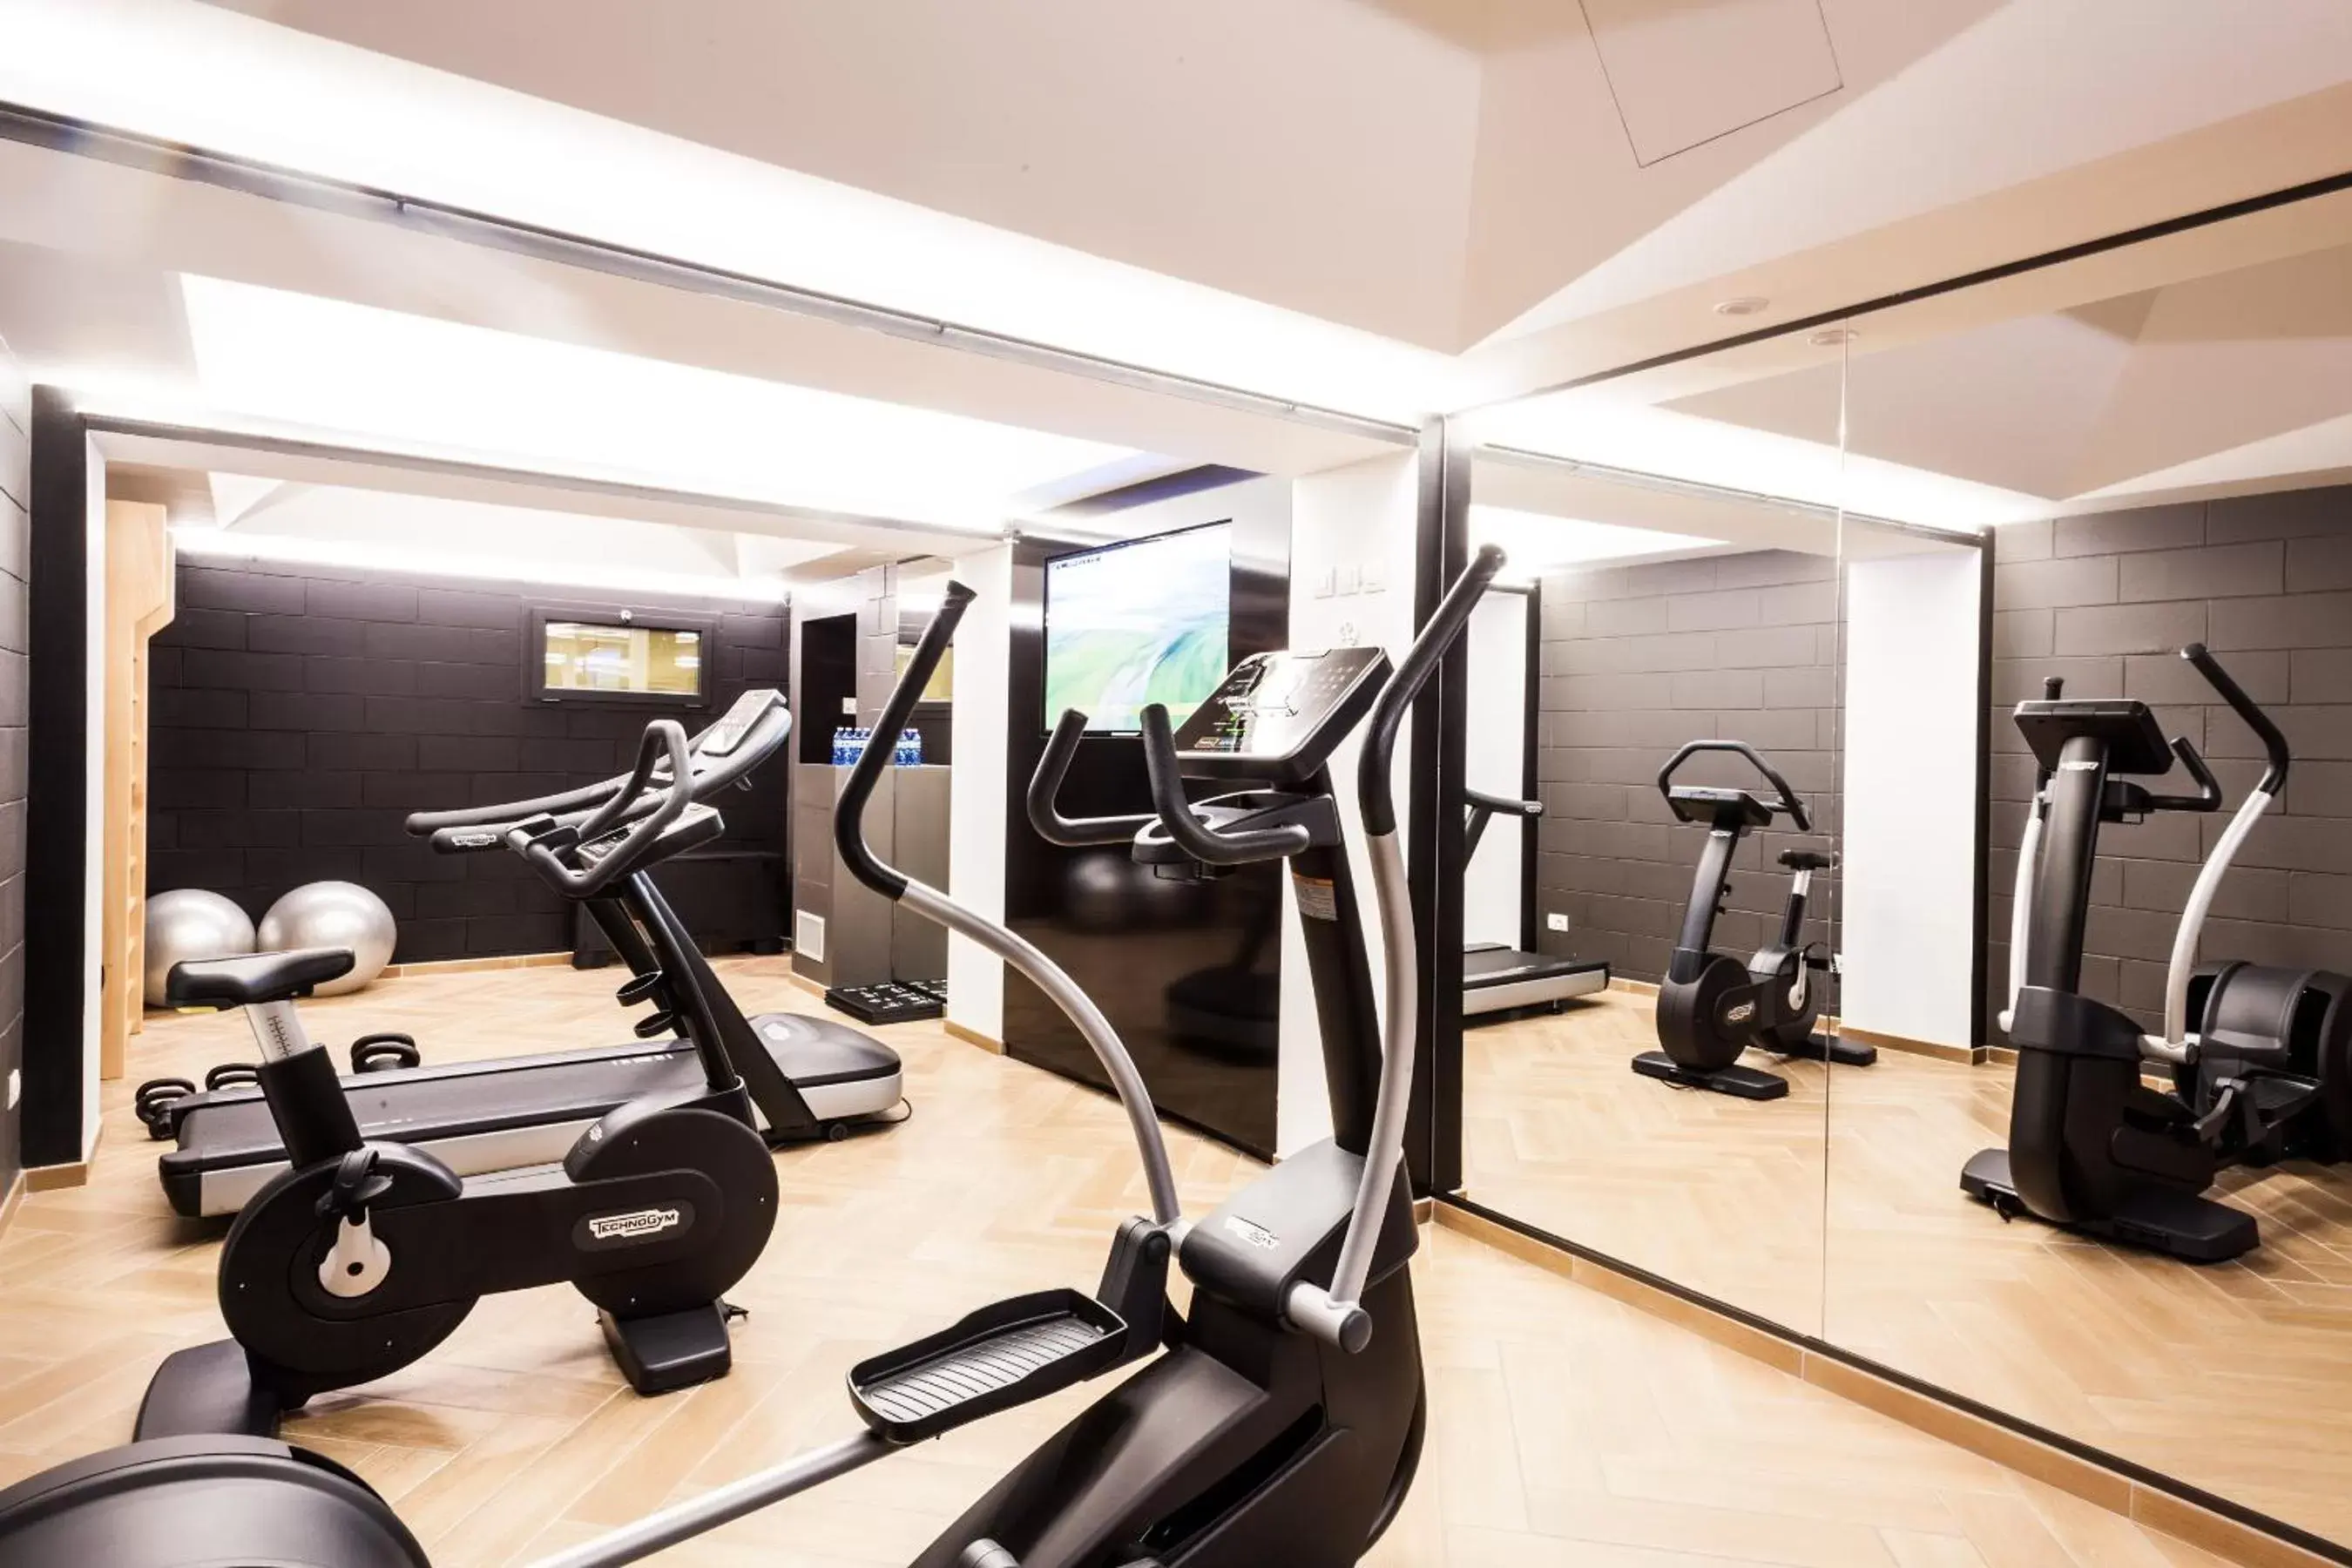 Fitness centre/facilities, Fitness Center/Facilities in Senato Hotel Milano